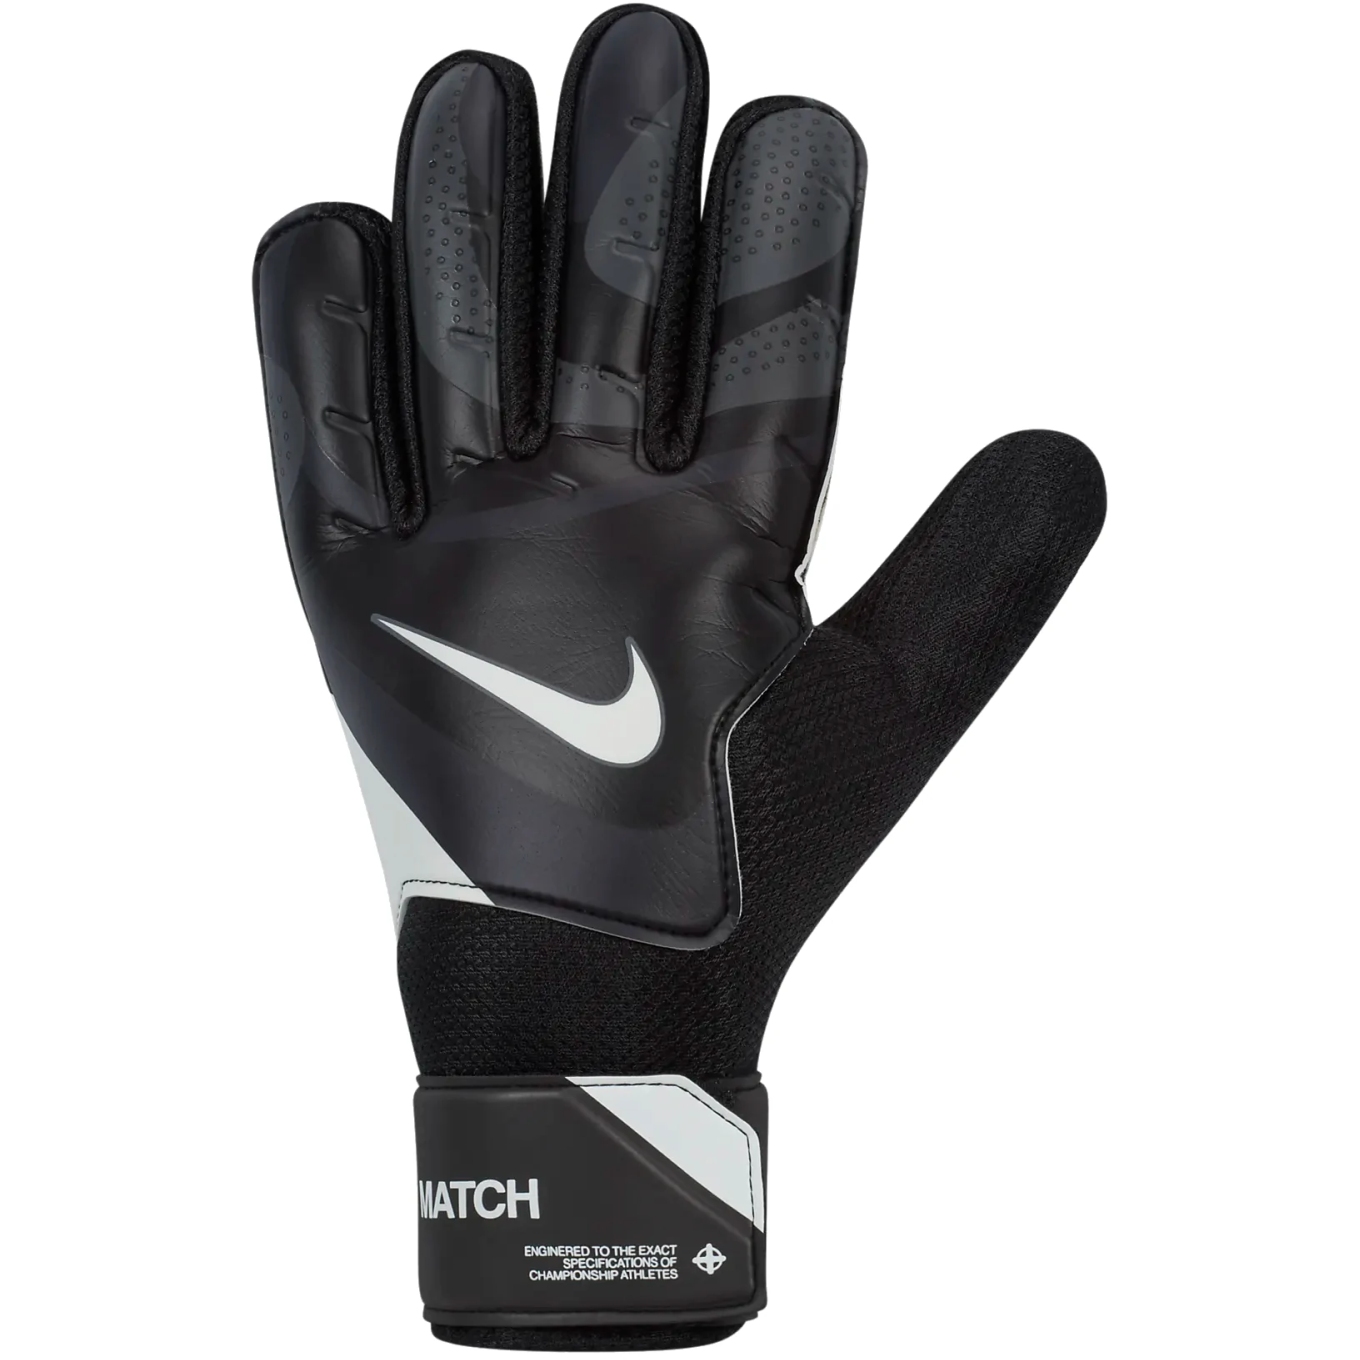 Produktbild von Nike Match Fußball-Torwarthandschuhe - black/dark grey/white FJ4862-011